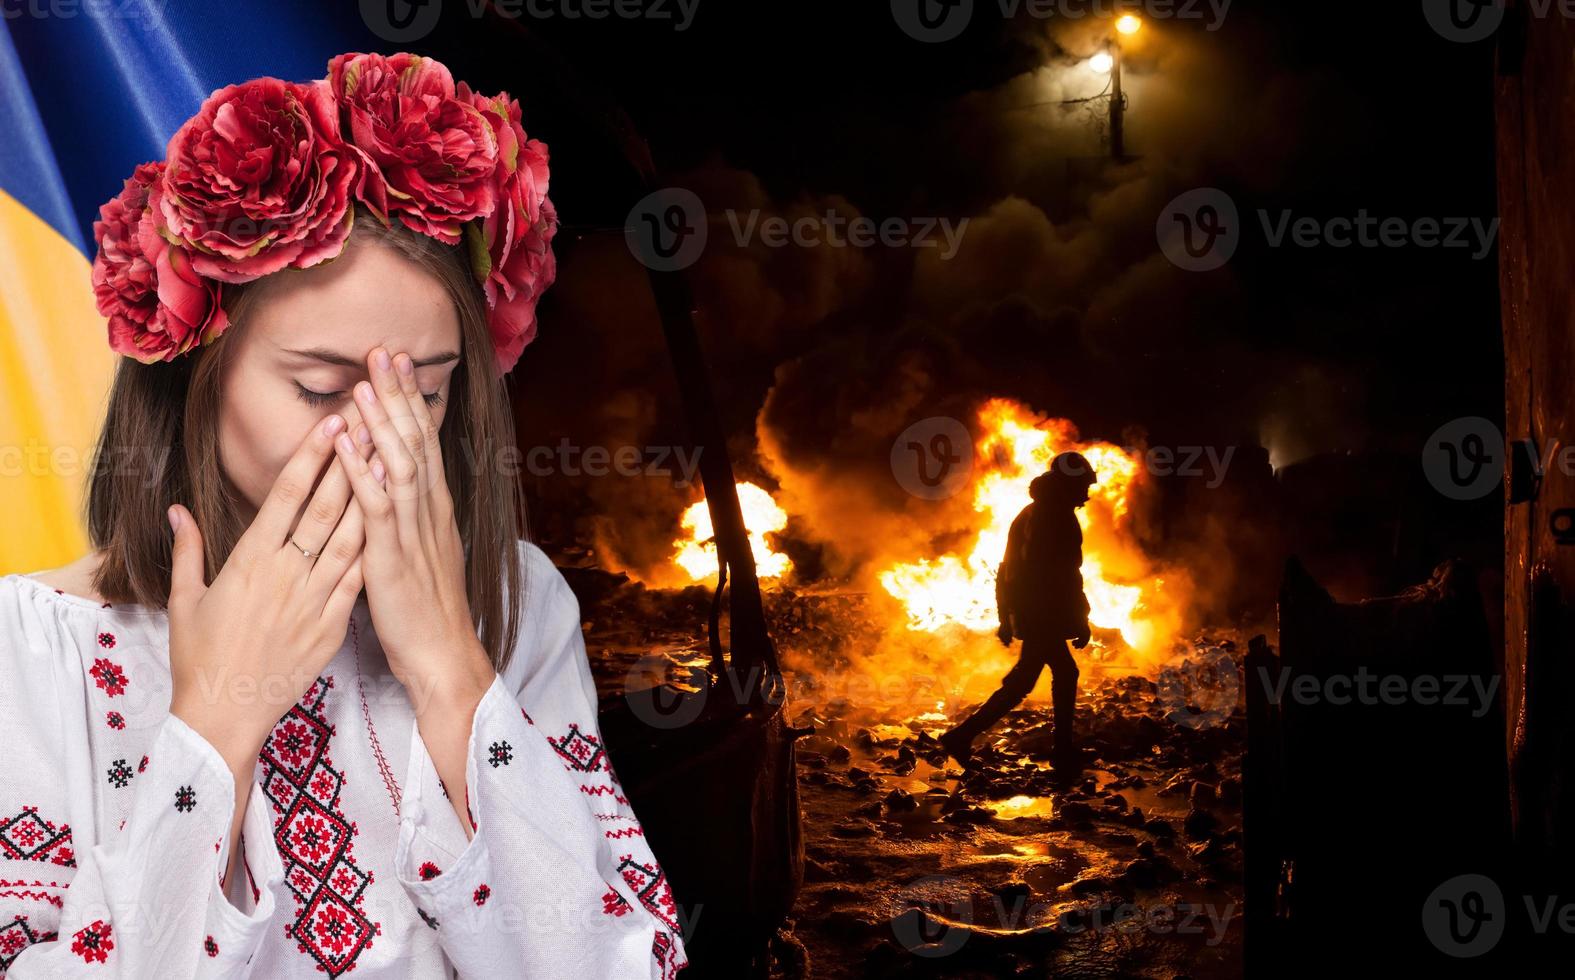 guerre en ukraine. jeune fille dans le costume national ukrainien photo